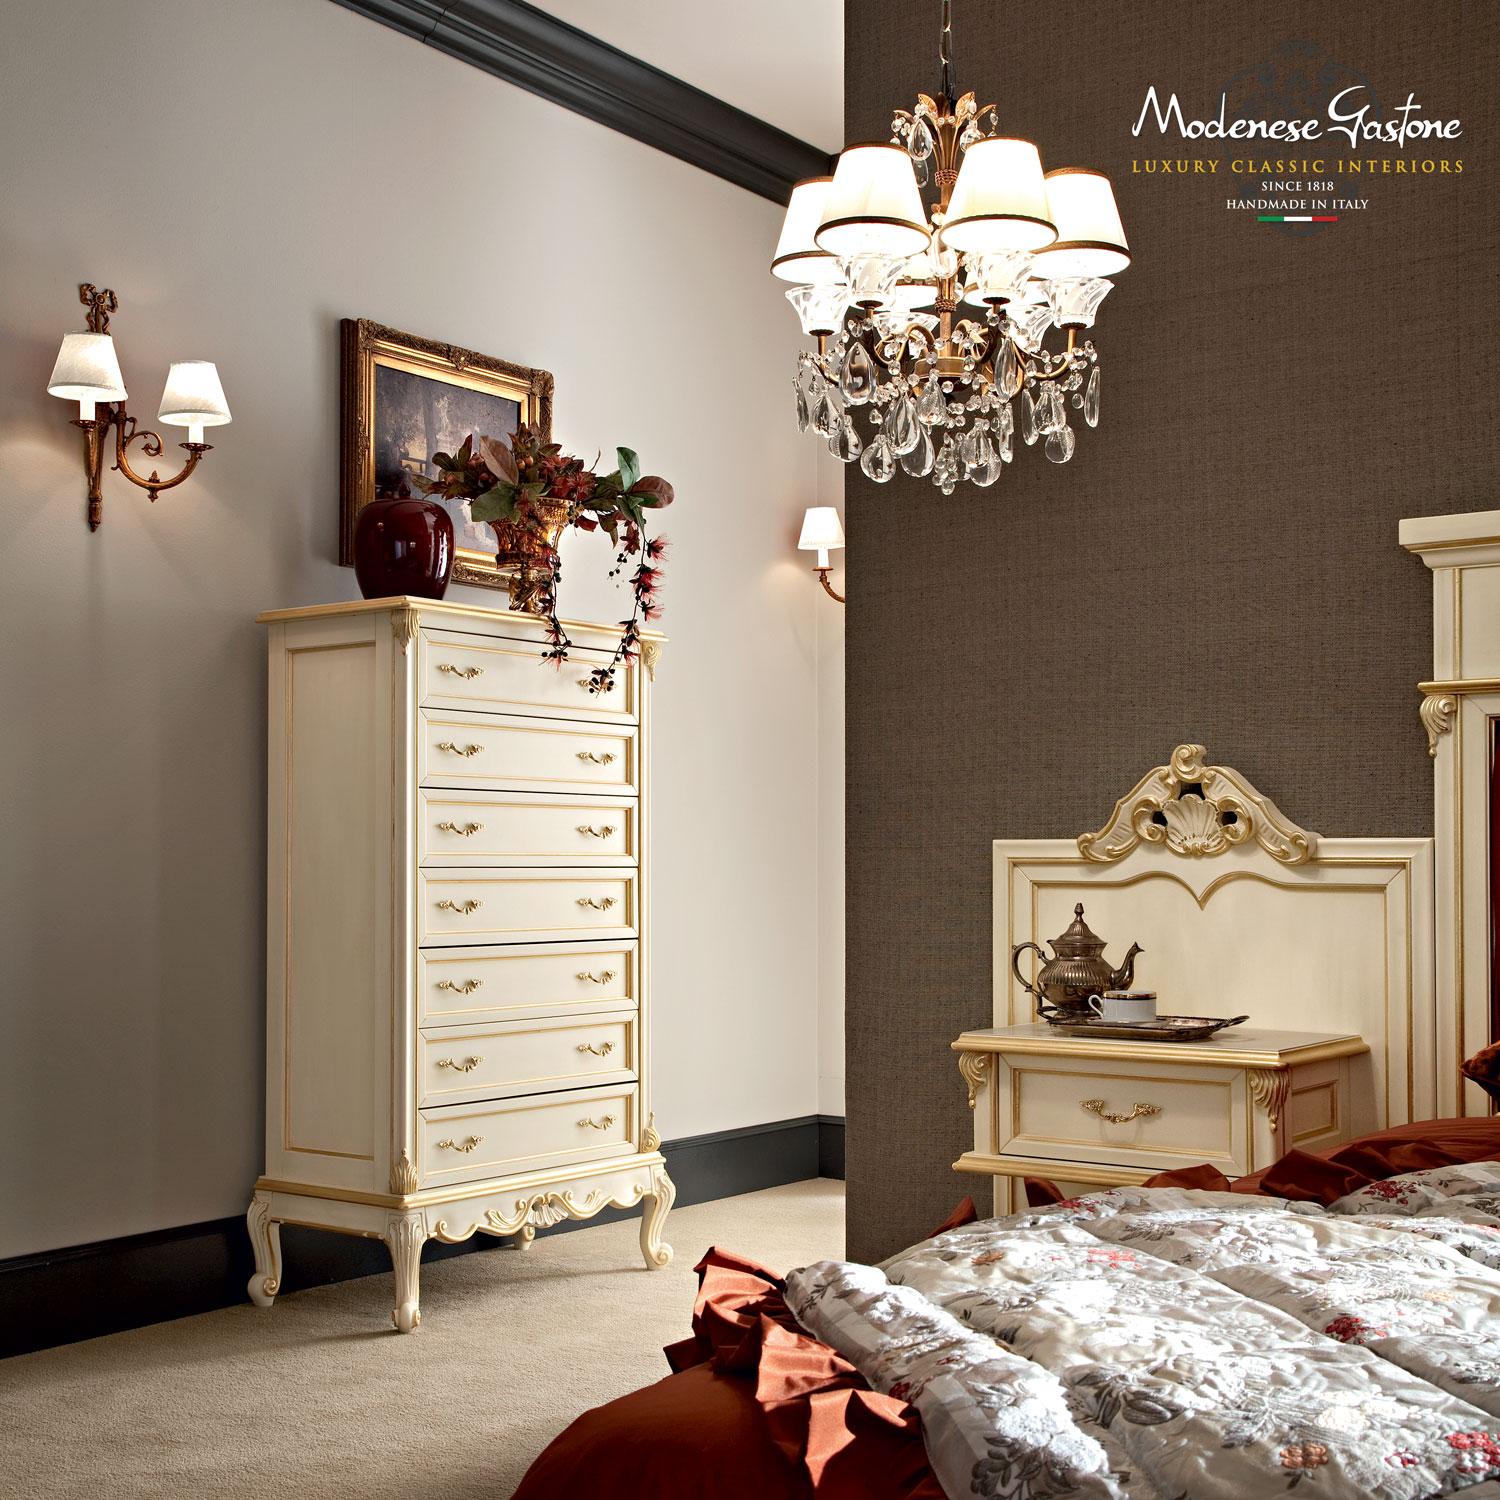 Die Kommode mit 7 Schubladen von Modenese Gastone Luxury Interiors ist eindeutig maßgeschneidert. Zu den hochwertigen Dekorationen gehören ansprechende Radica-Holzoberflächen und Blattsilberverzierungen an den Kanten, barocke Schnitzereien und